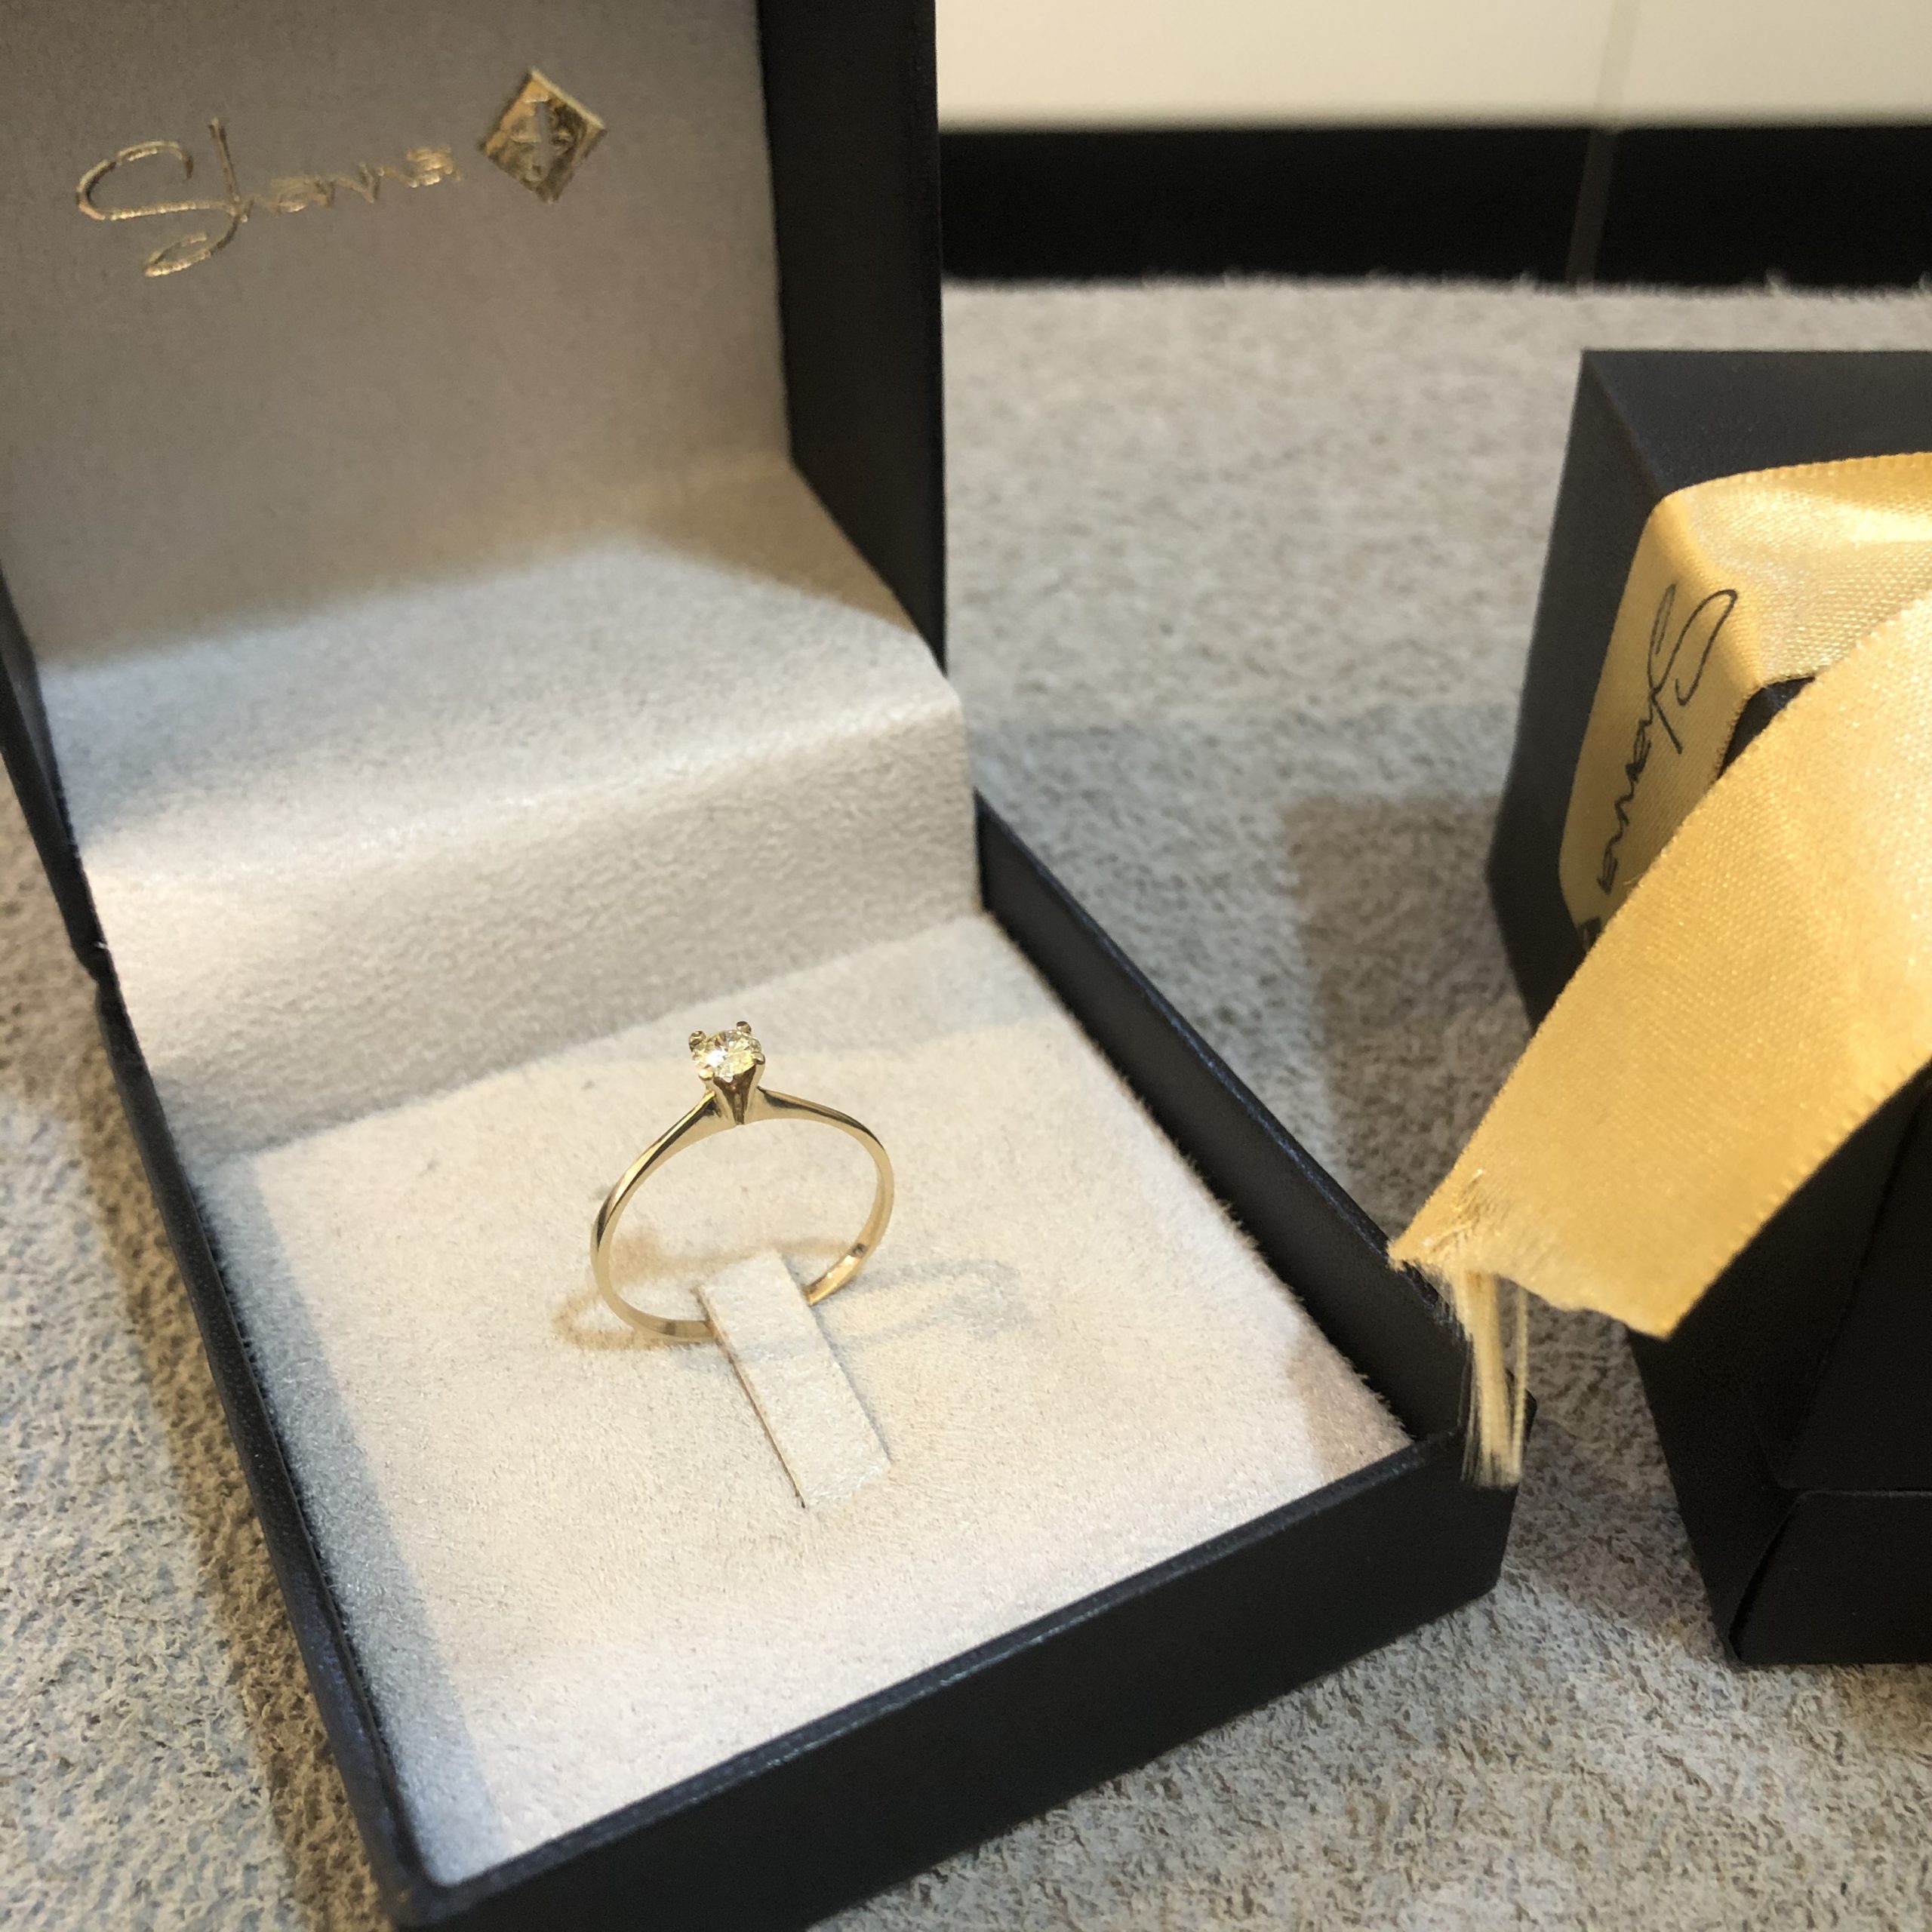 Alianças Gold Casamento e Noivado em Ouro 18K - Fabile joias